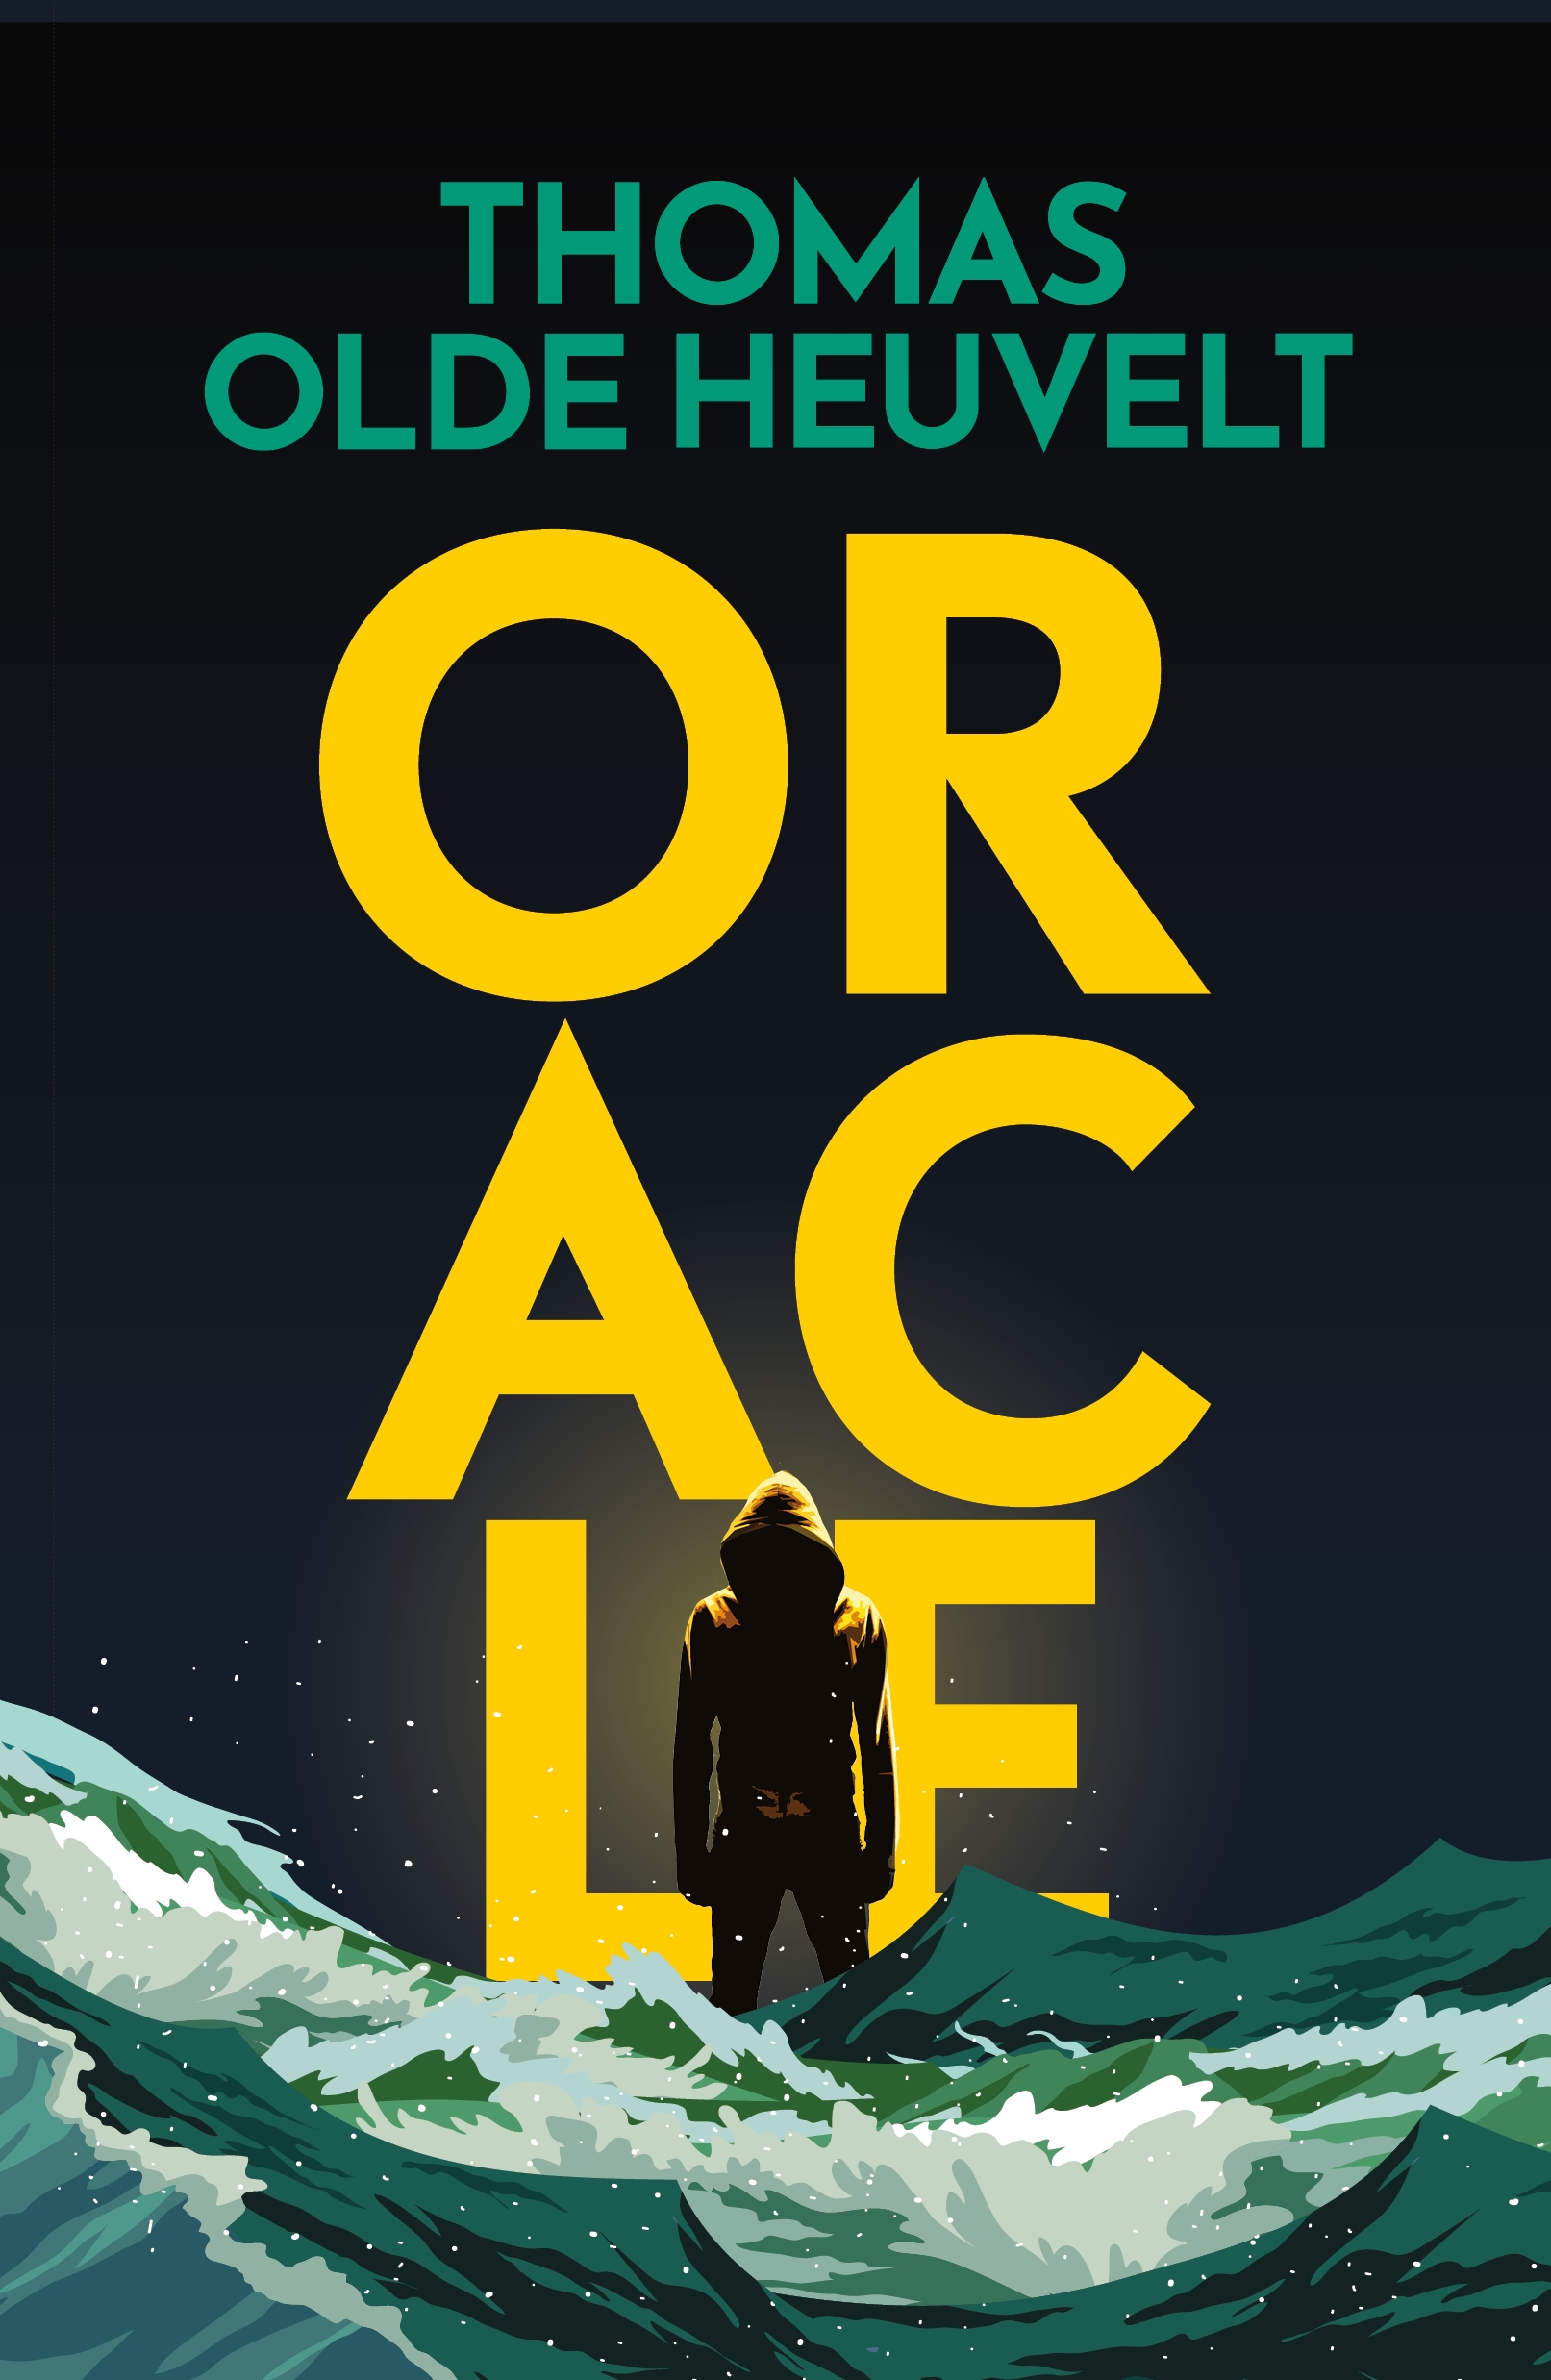 Oracle by Thomas Olde Heuvelt